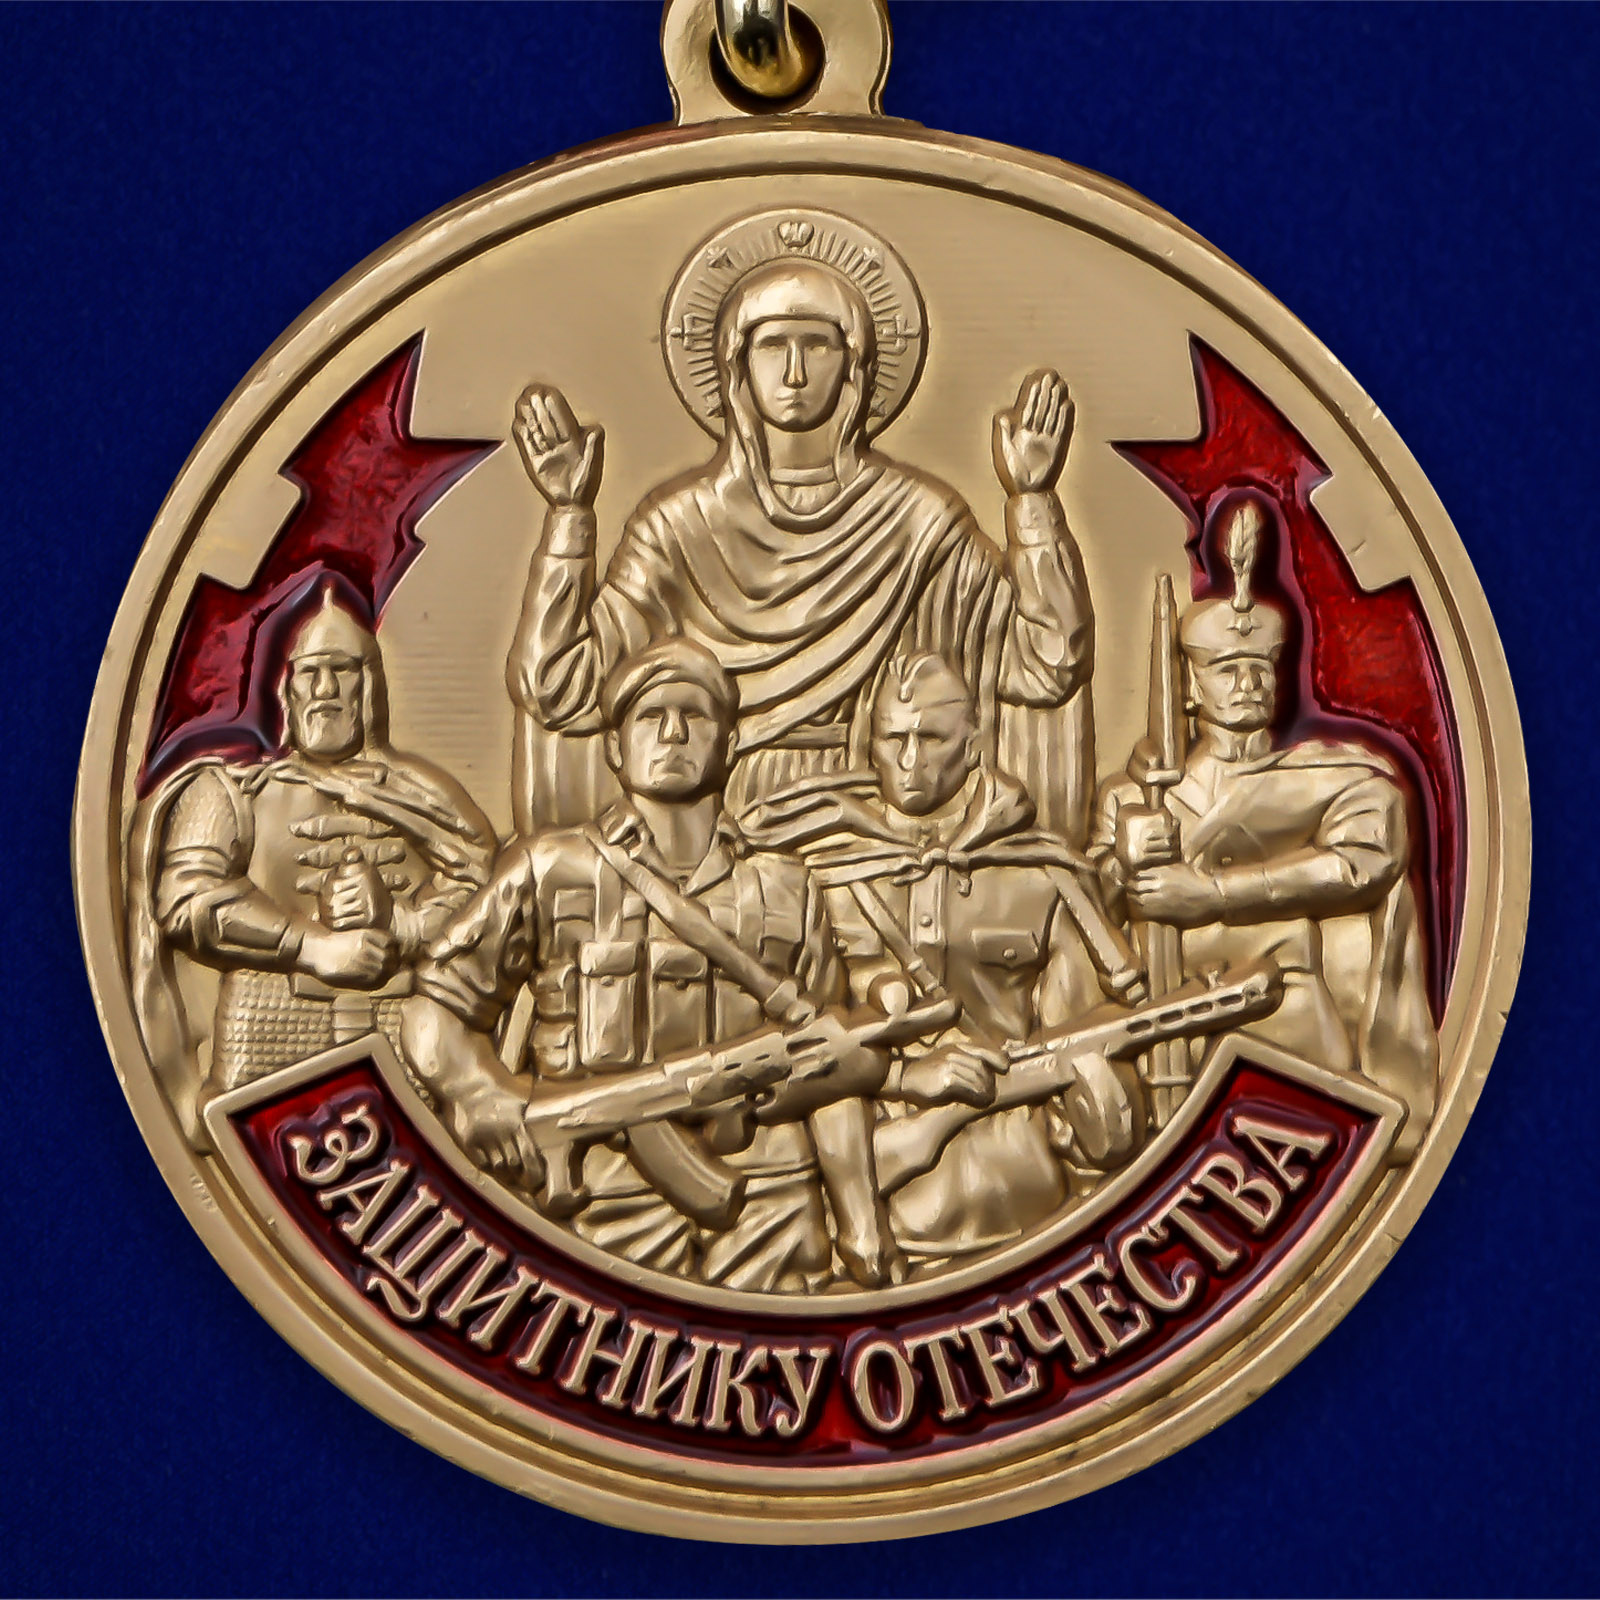 Памятная медаль Защитнику Отечества "23 февраля" 